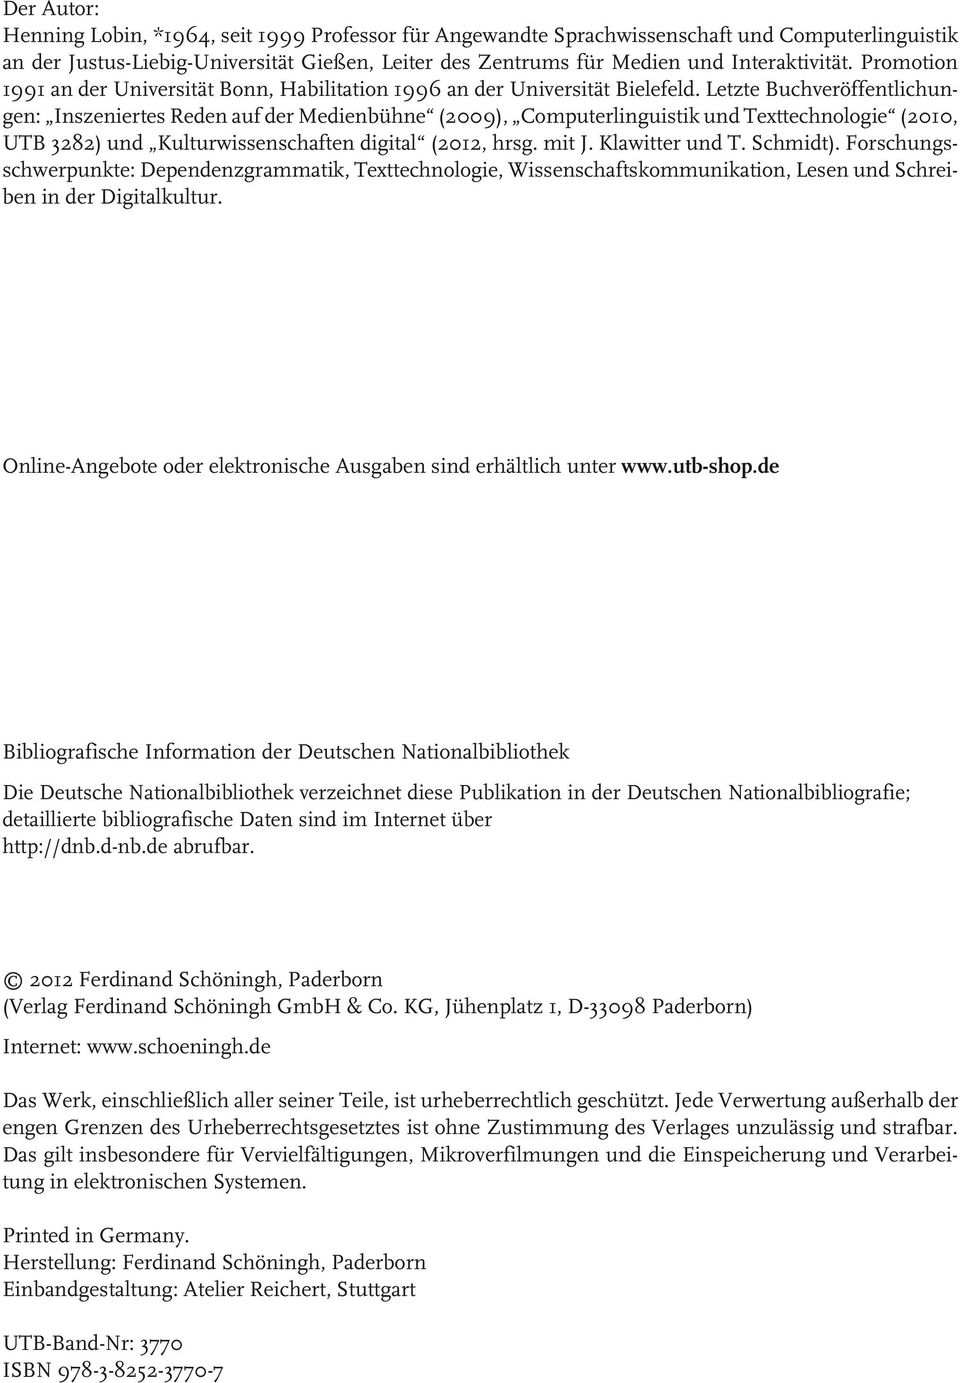 Leze Buchveröffenlichungen: Inszenieres Reden auf der Medienbühne (2009), Compuerlinguisik und Texechnologie (2010, UTB 3282) und Kulurwissenschafen digial (2012, hrsg. mi J. Klawier und T. Schmid).